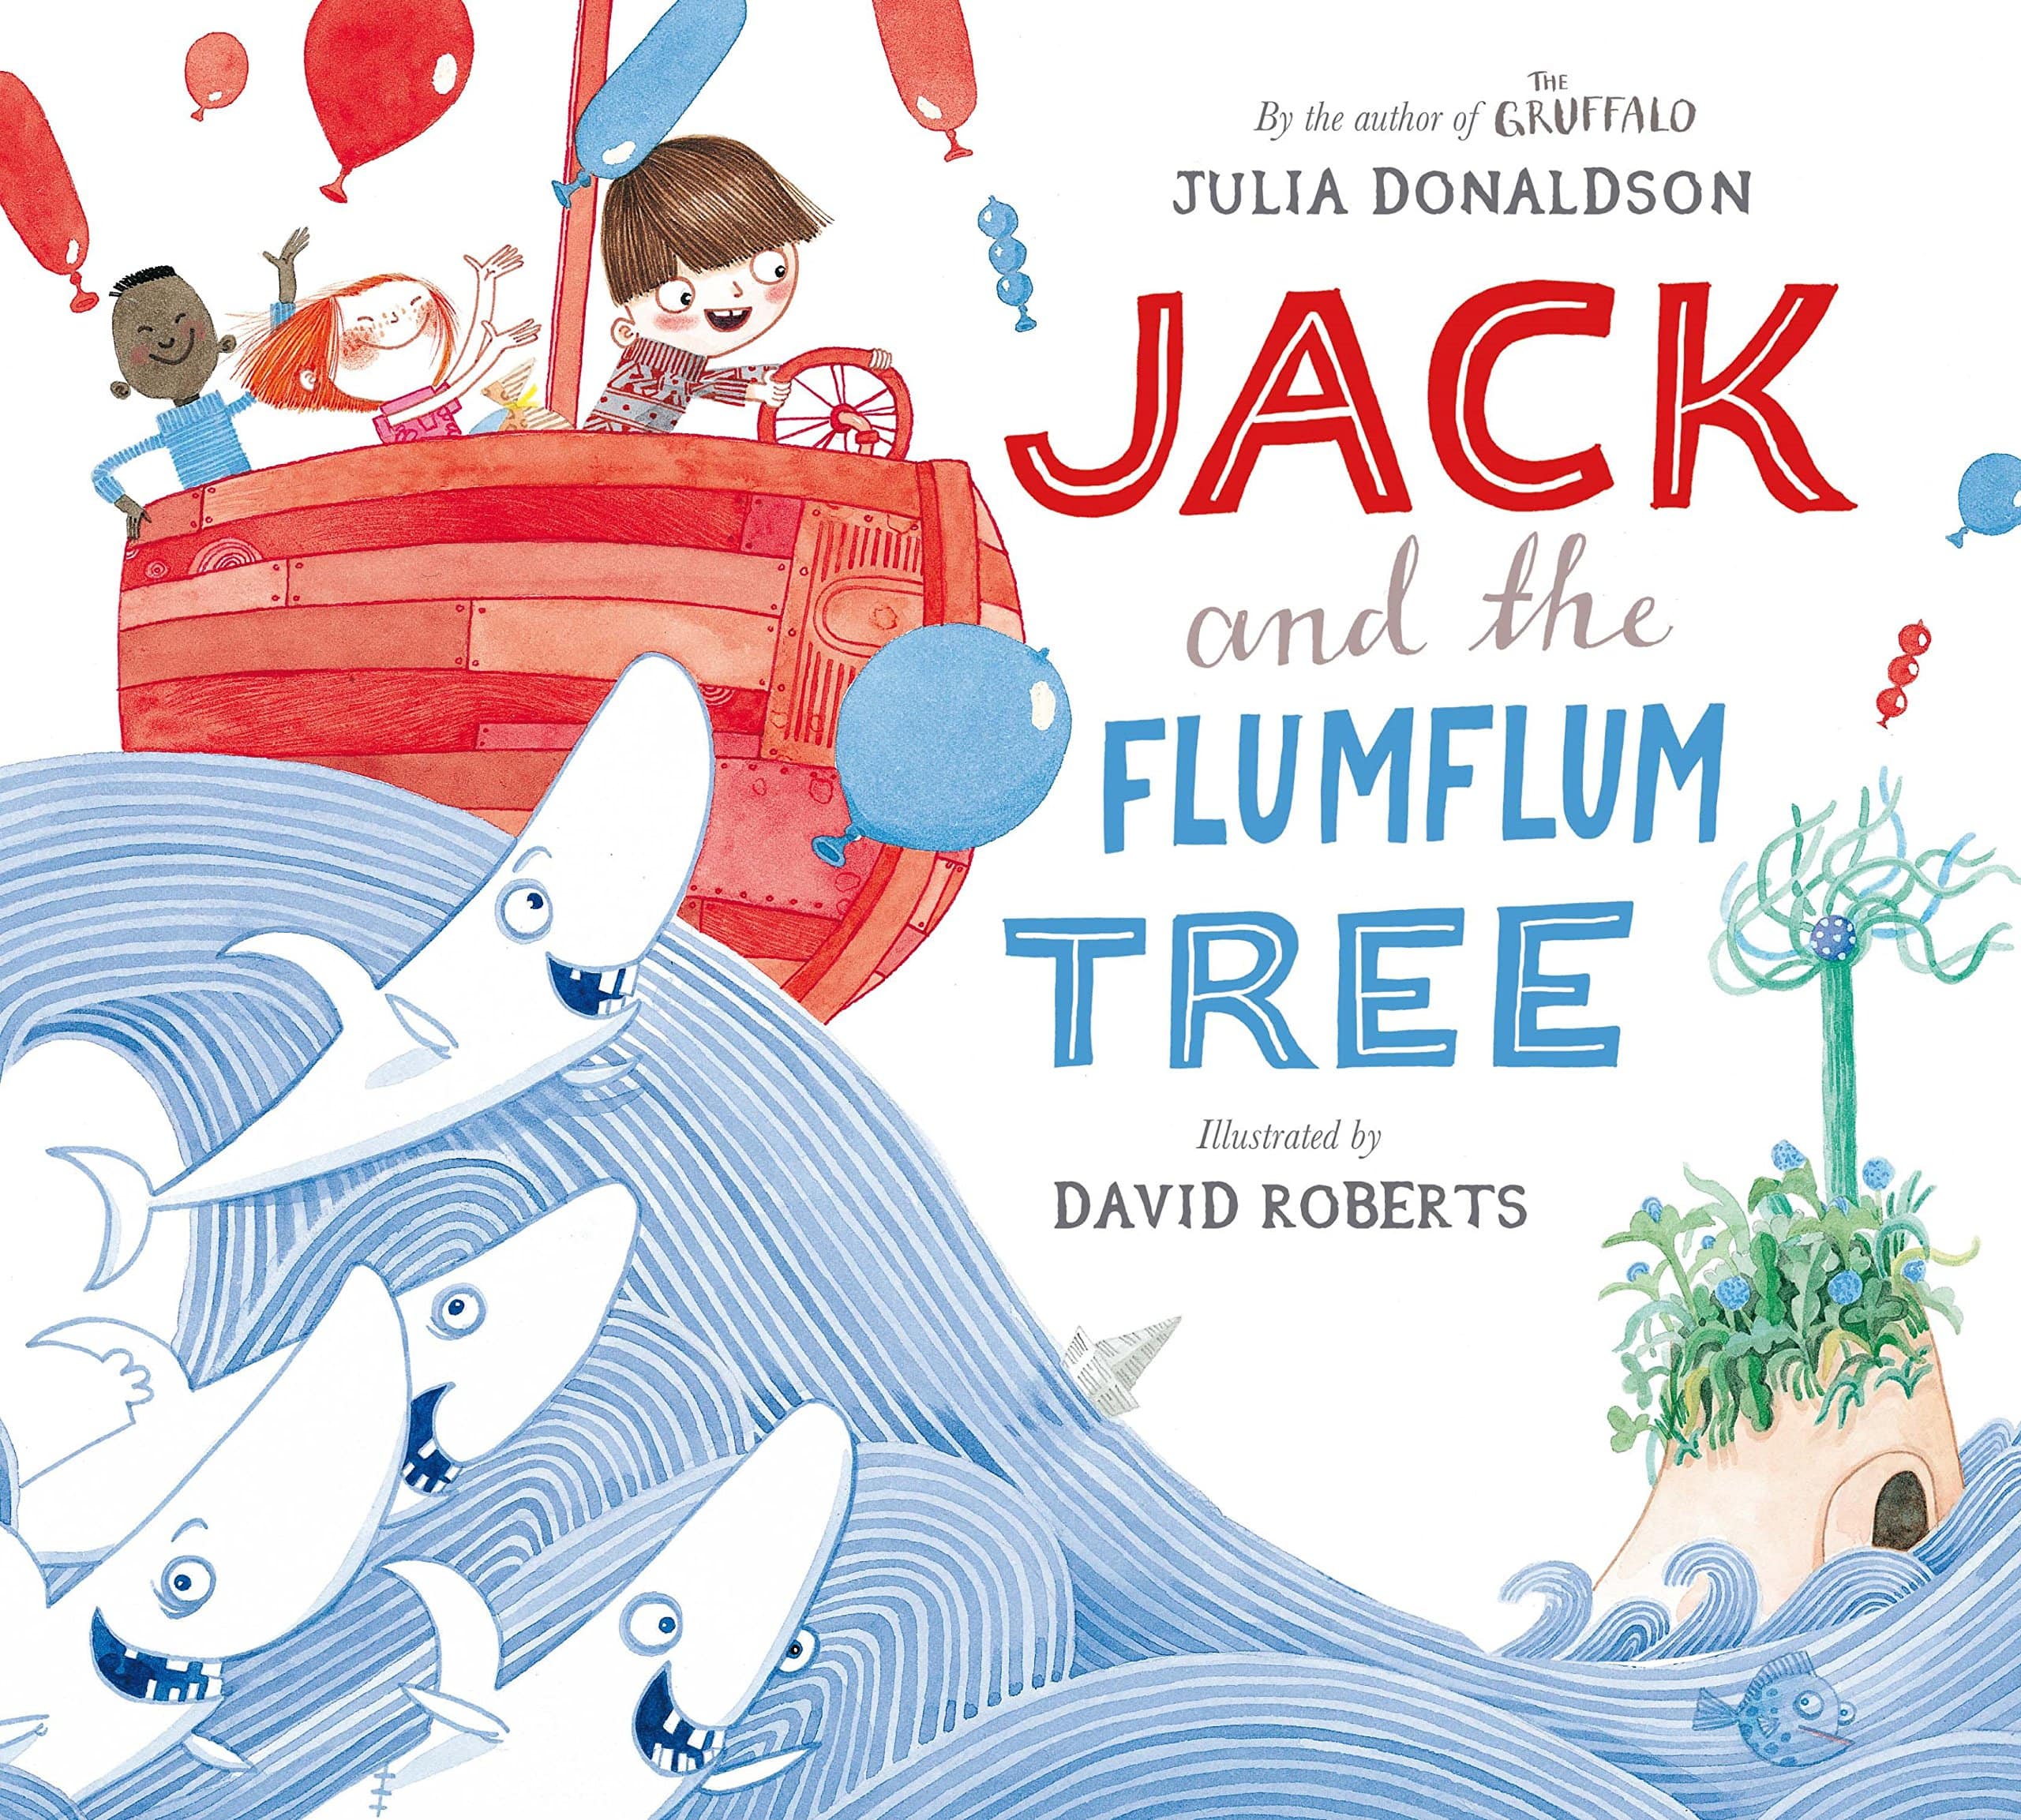 IMG : Jack and the Flumflum tree